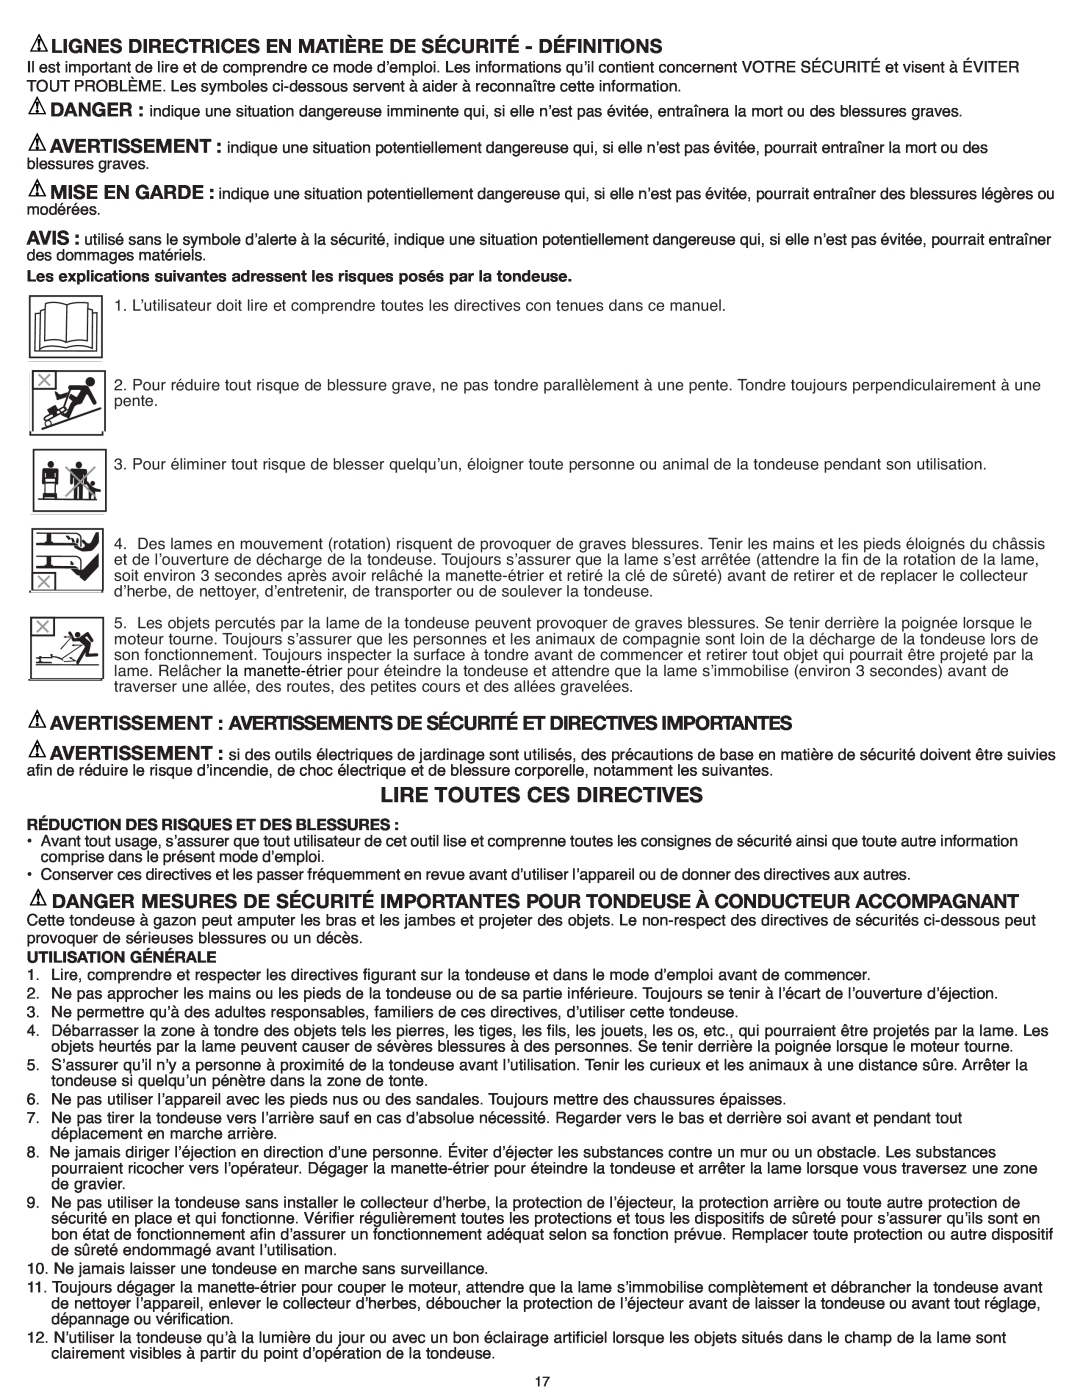 Black & Decker CM1836R Lire Toutes Ces Directives, Avertissement Avertissements De Sécurité Et Directivesimportantes 